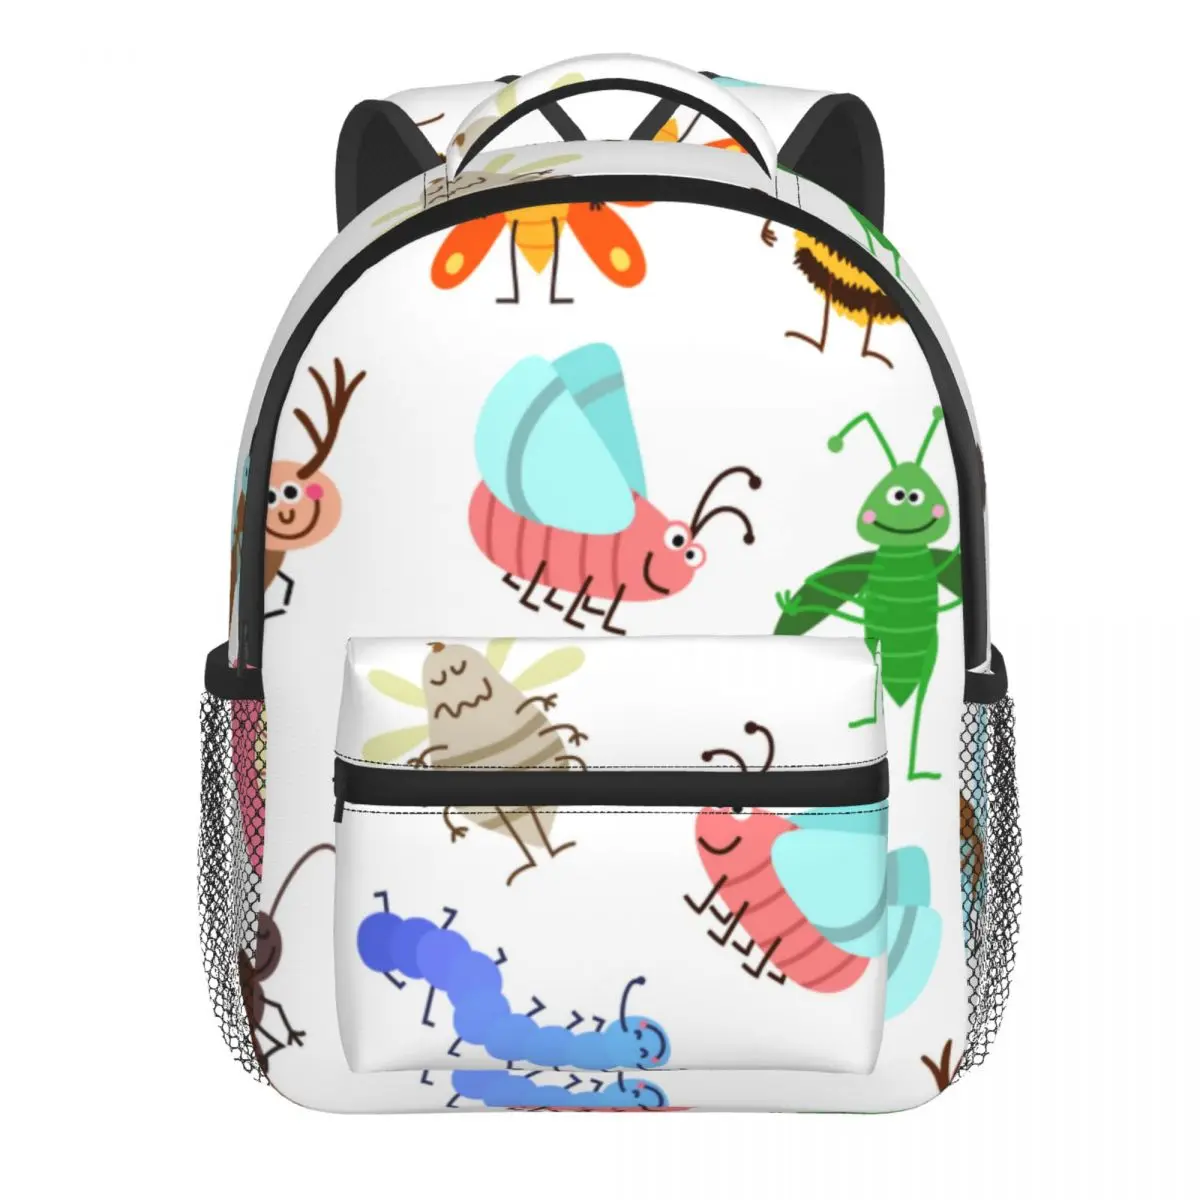 Cute Cartoon Insects Baby Backpack Kindergarten Schoolbag Kids Children School Bag